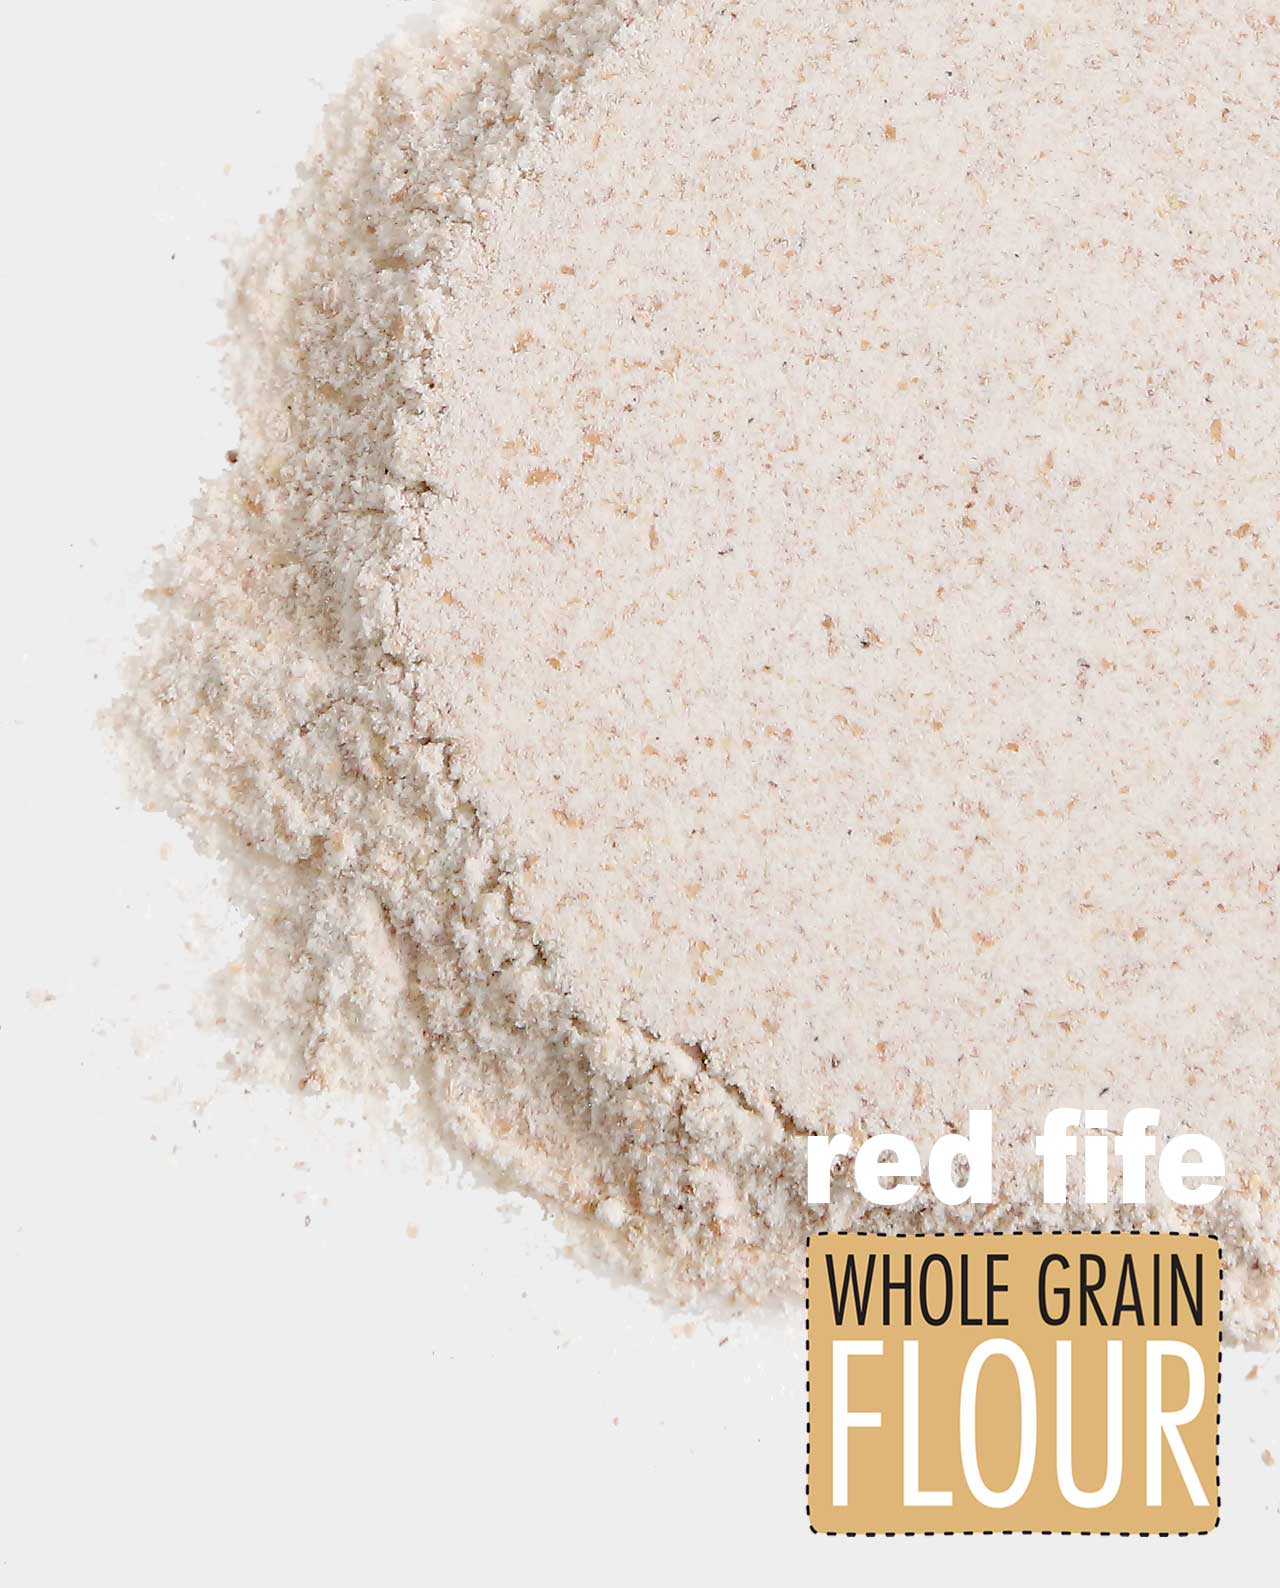 Red Fife Whole Grain Flour